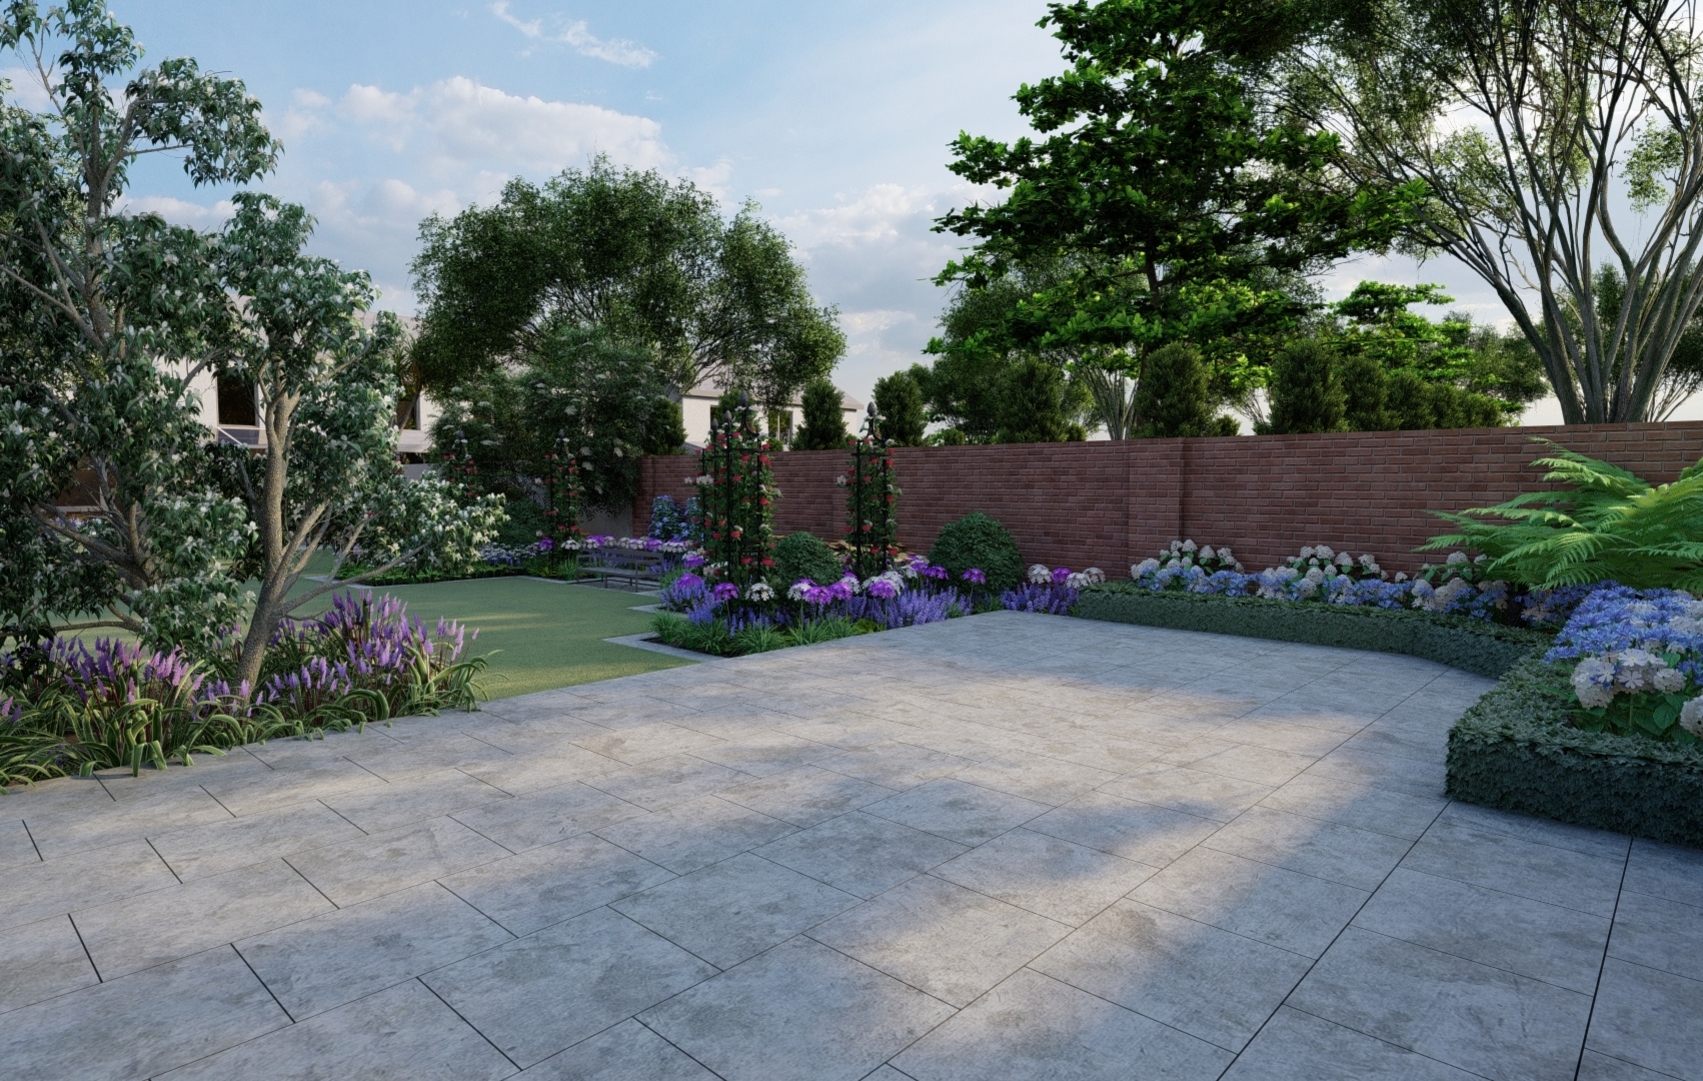 Design Visual showing expanive patio area | Owen Chubb Garden Design